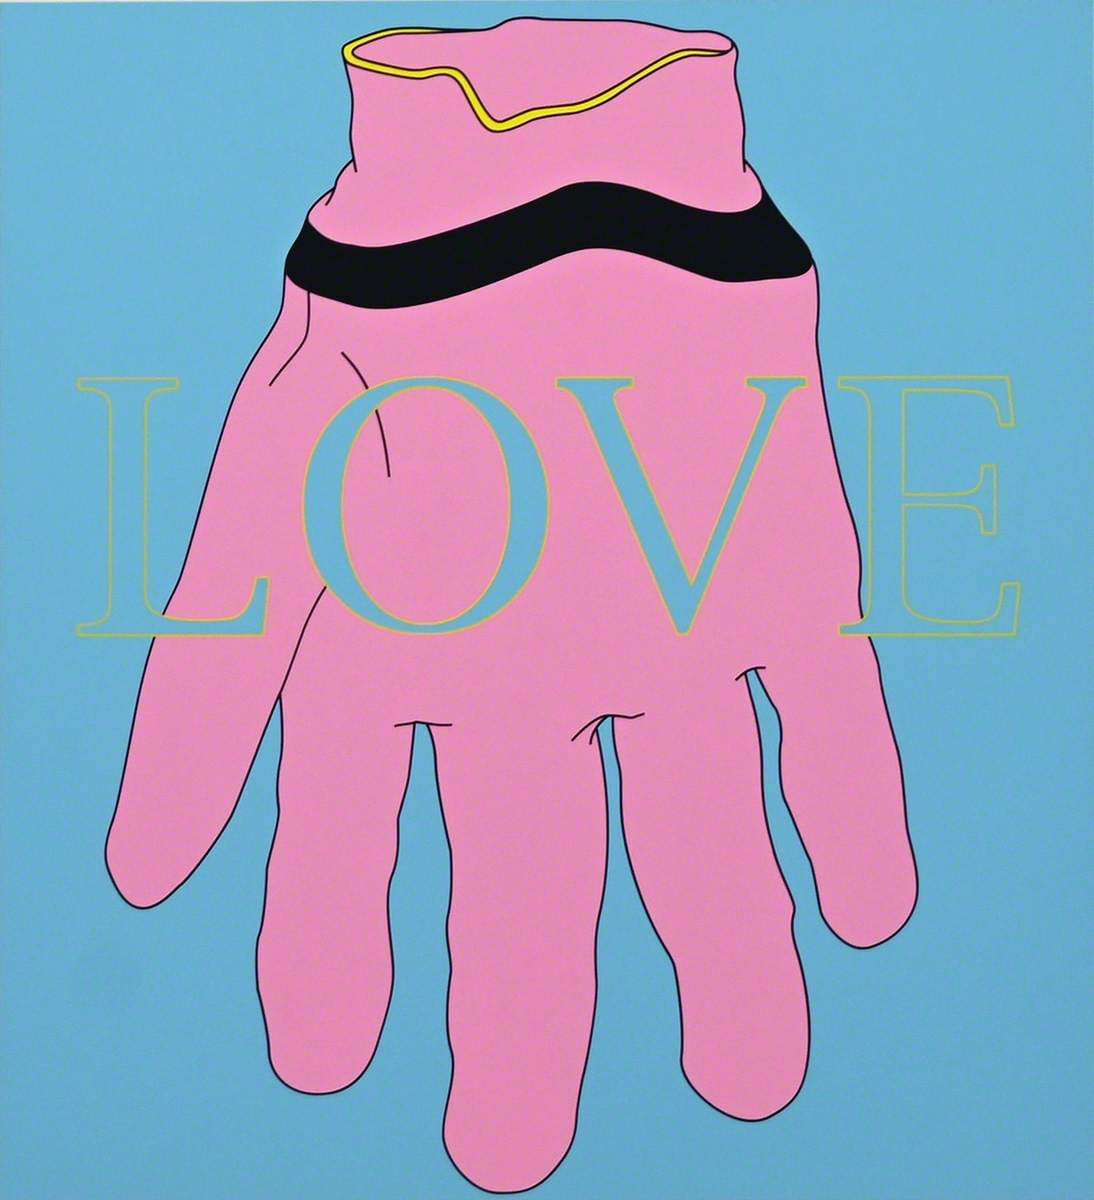 Love/Glove